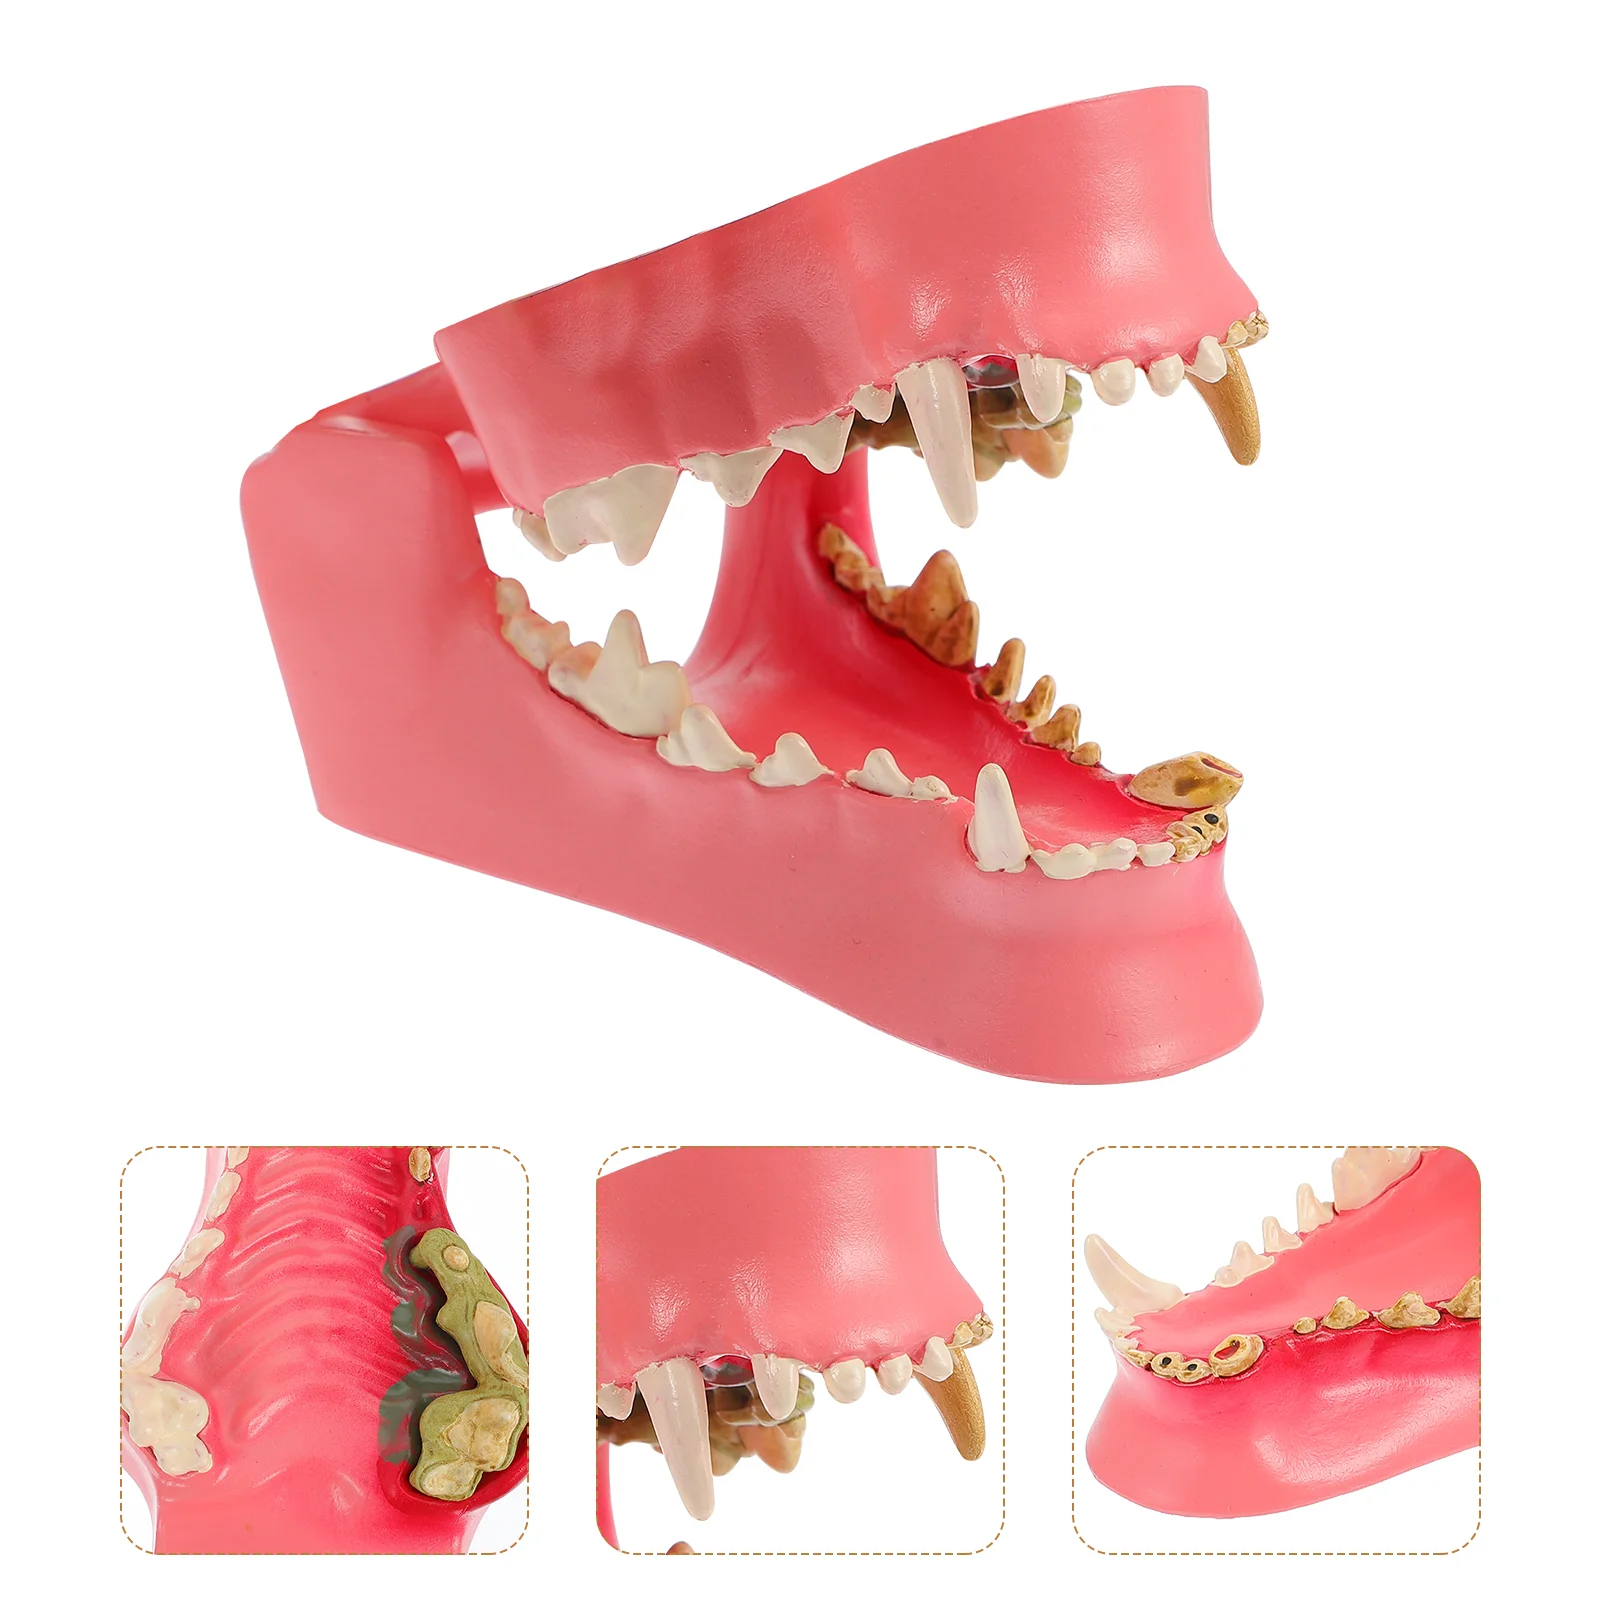 

Модель собаки зубы, модель для исследования, демонстрация зубов